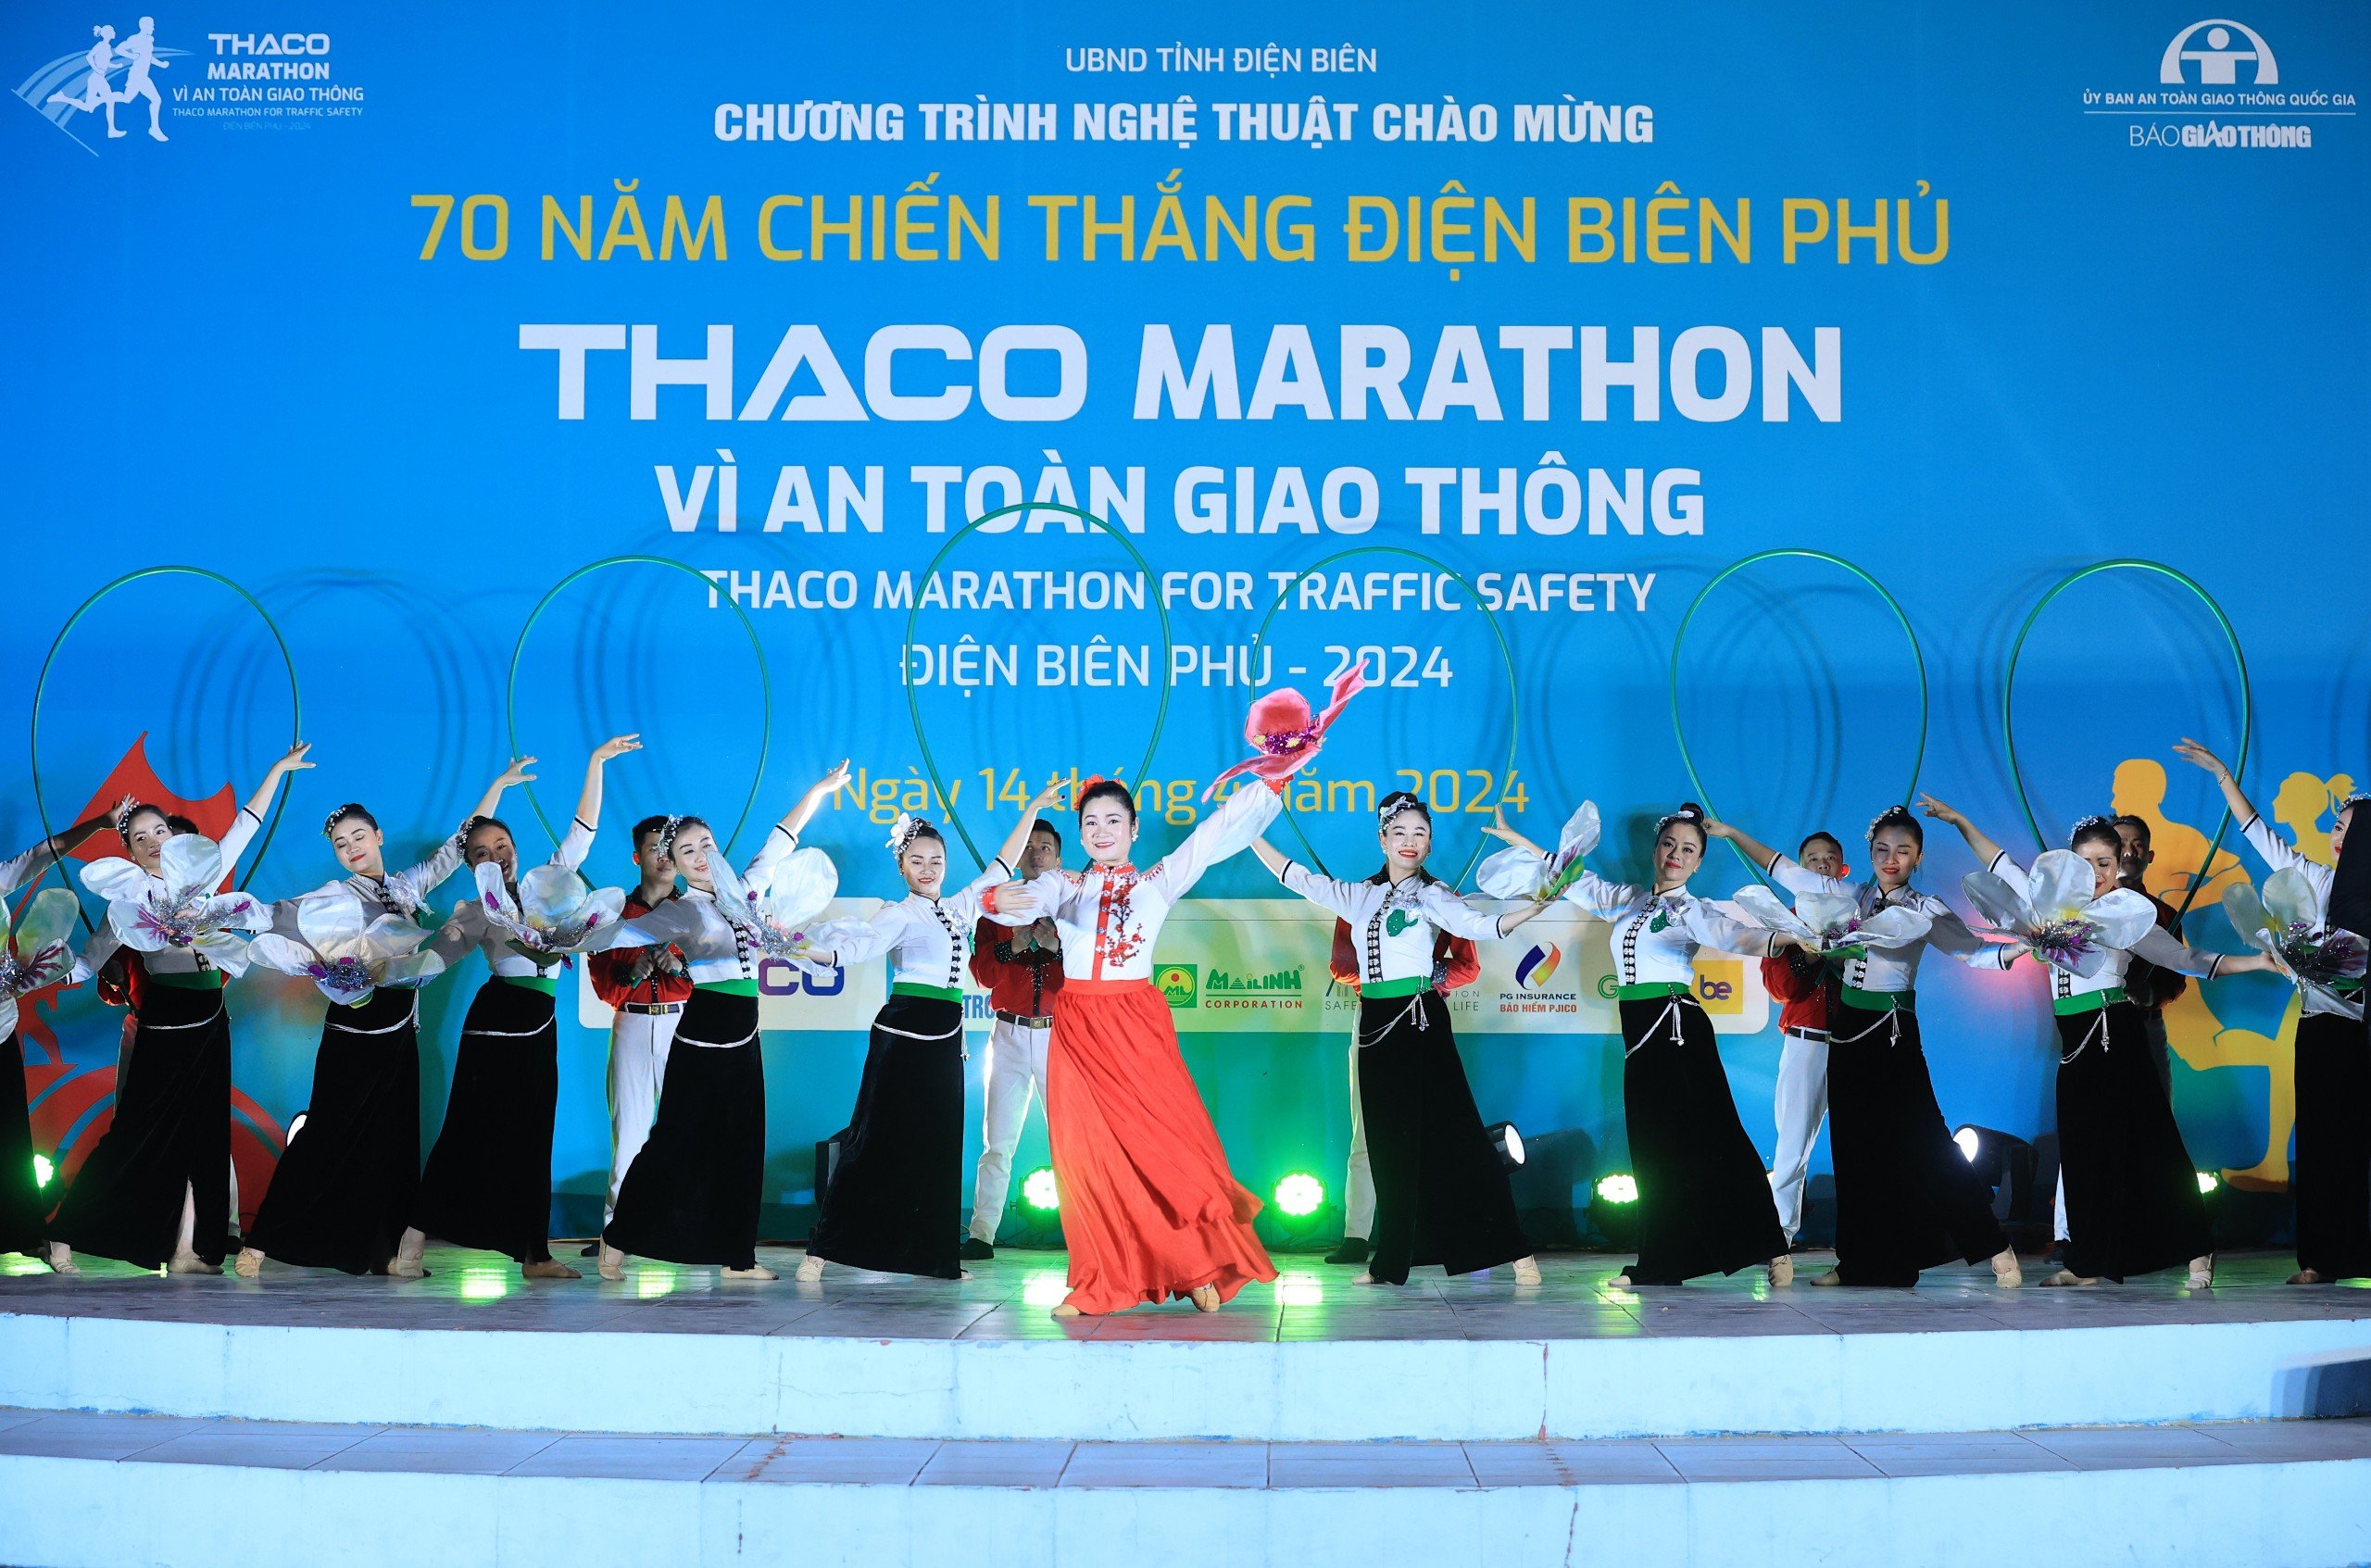 Lung linh sắc màu đêm nghệ thuật chào mừng Giải Marathon vì ATGT 2024- Ảnh 5.